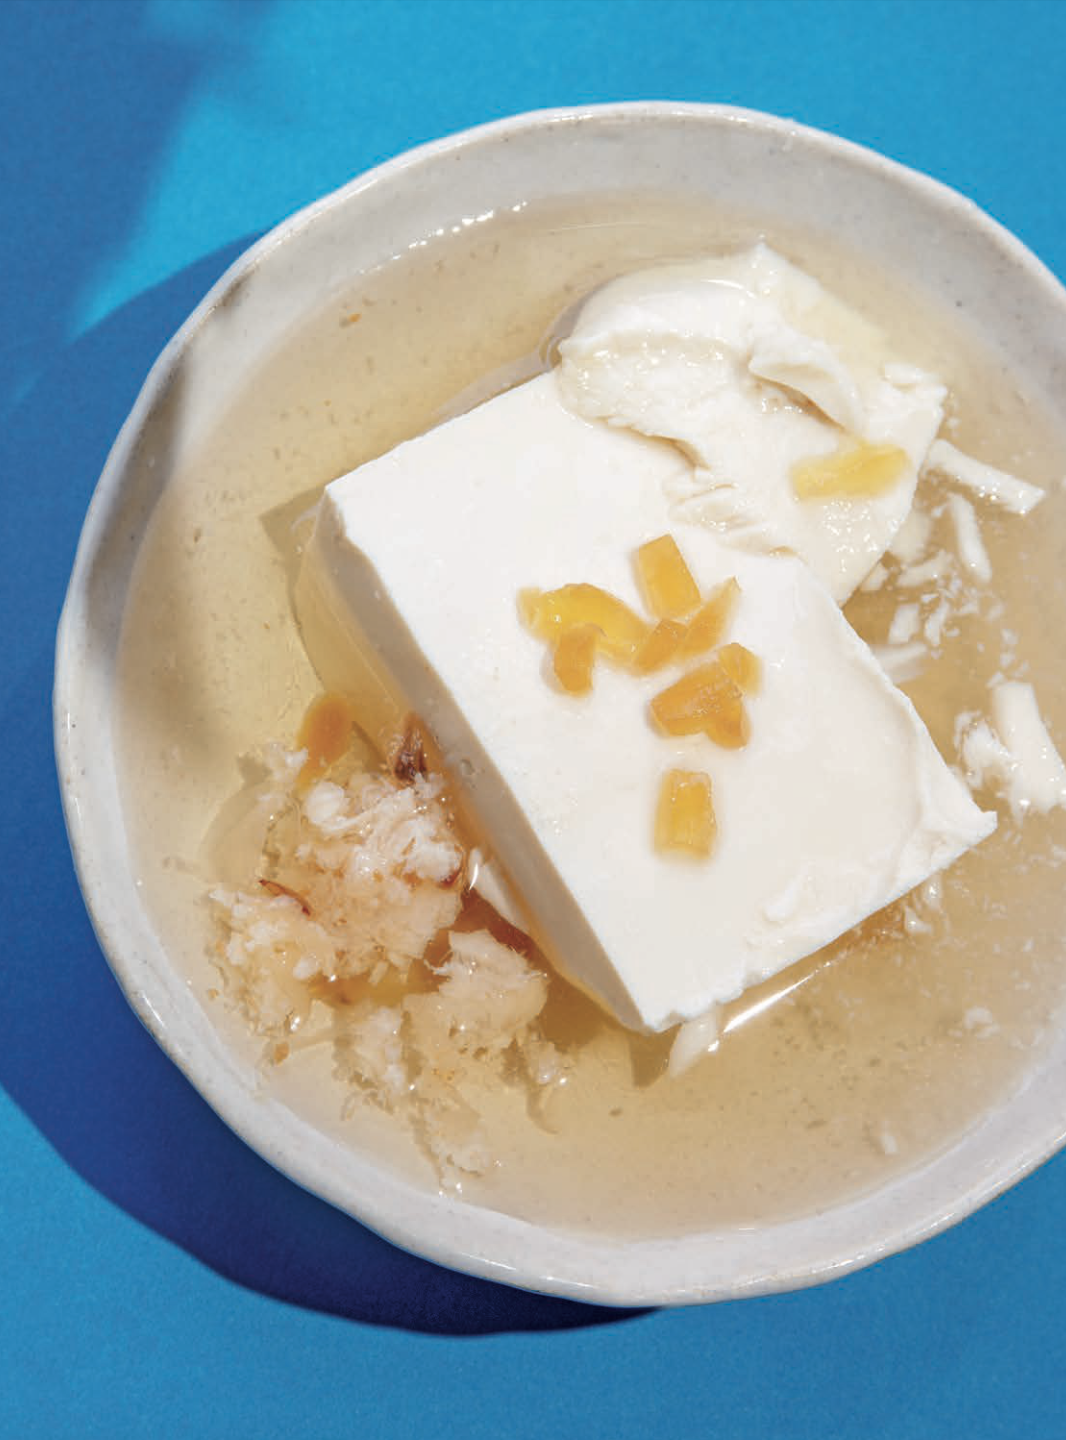 Recette : Dessert au tofu soyeux « arrangé » - Home magazine